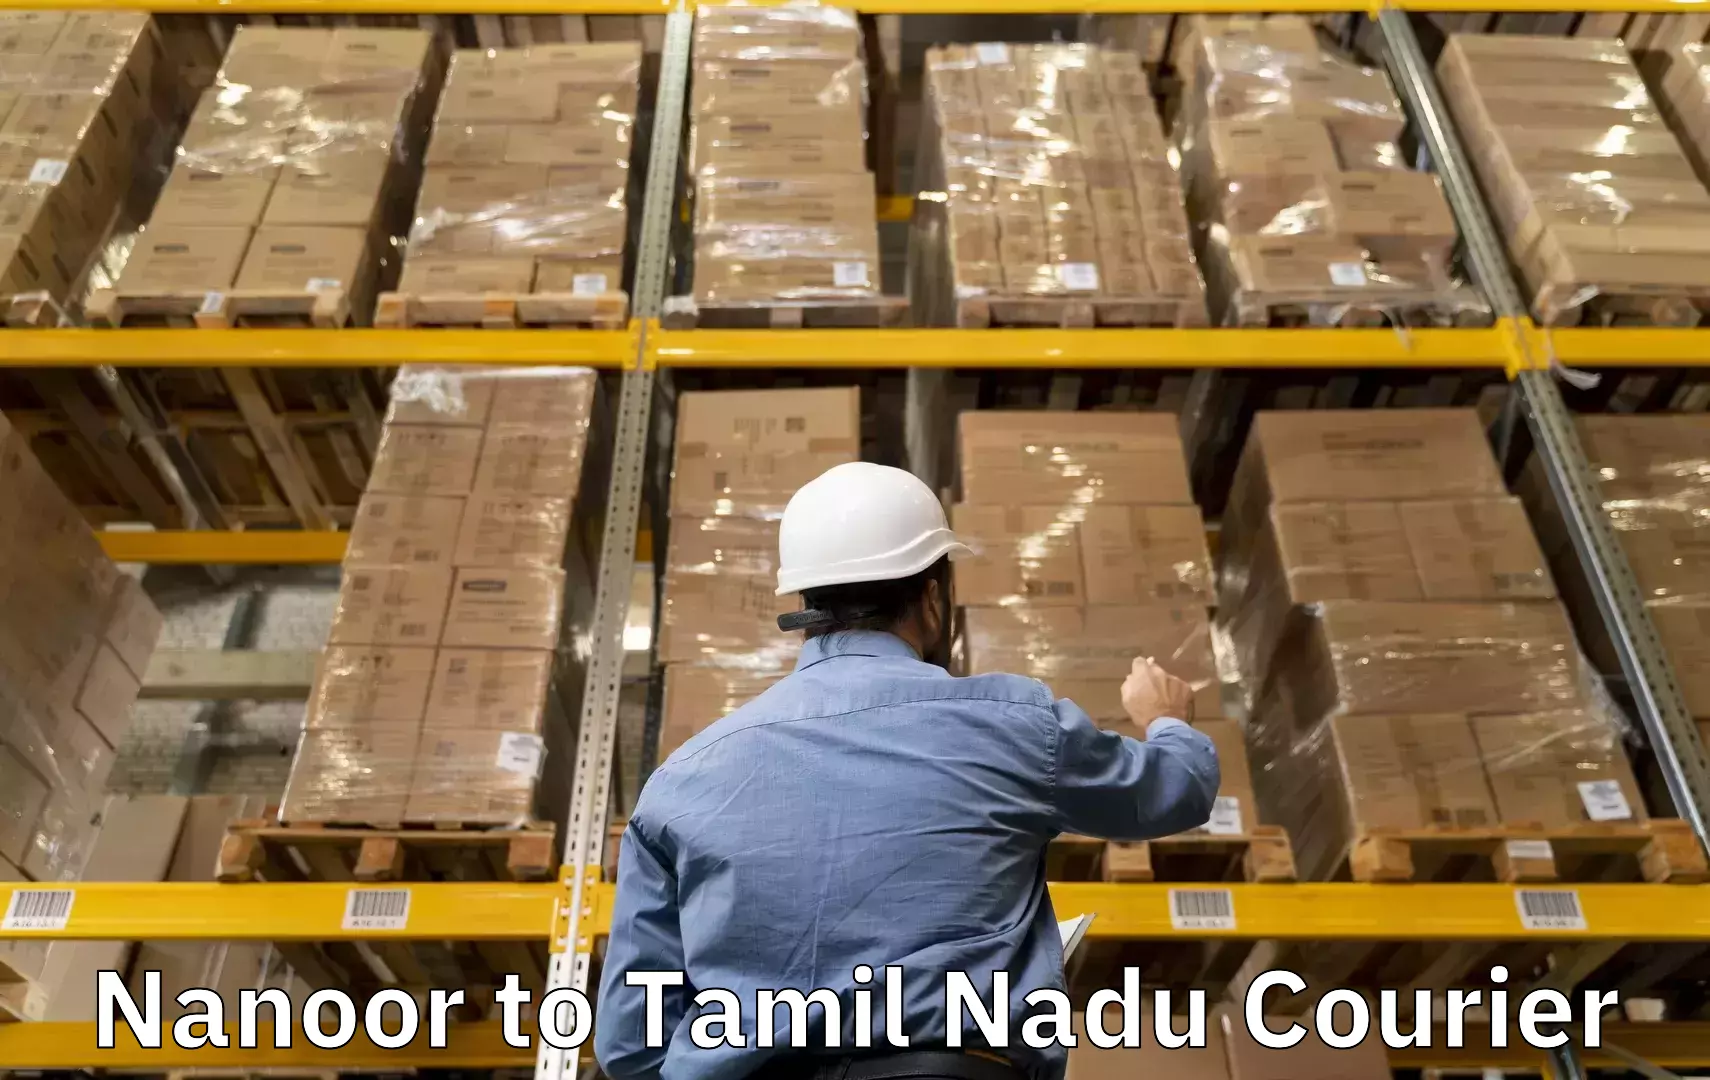 Excess baggage transport Nanoor to Tamil Nadu